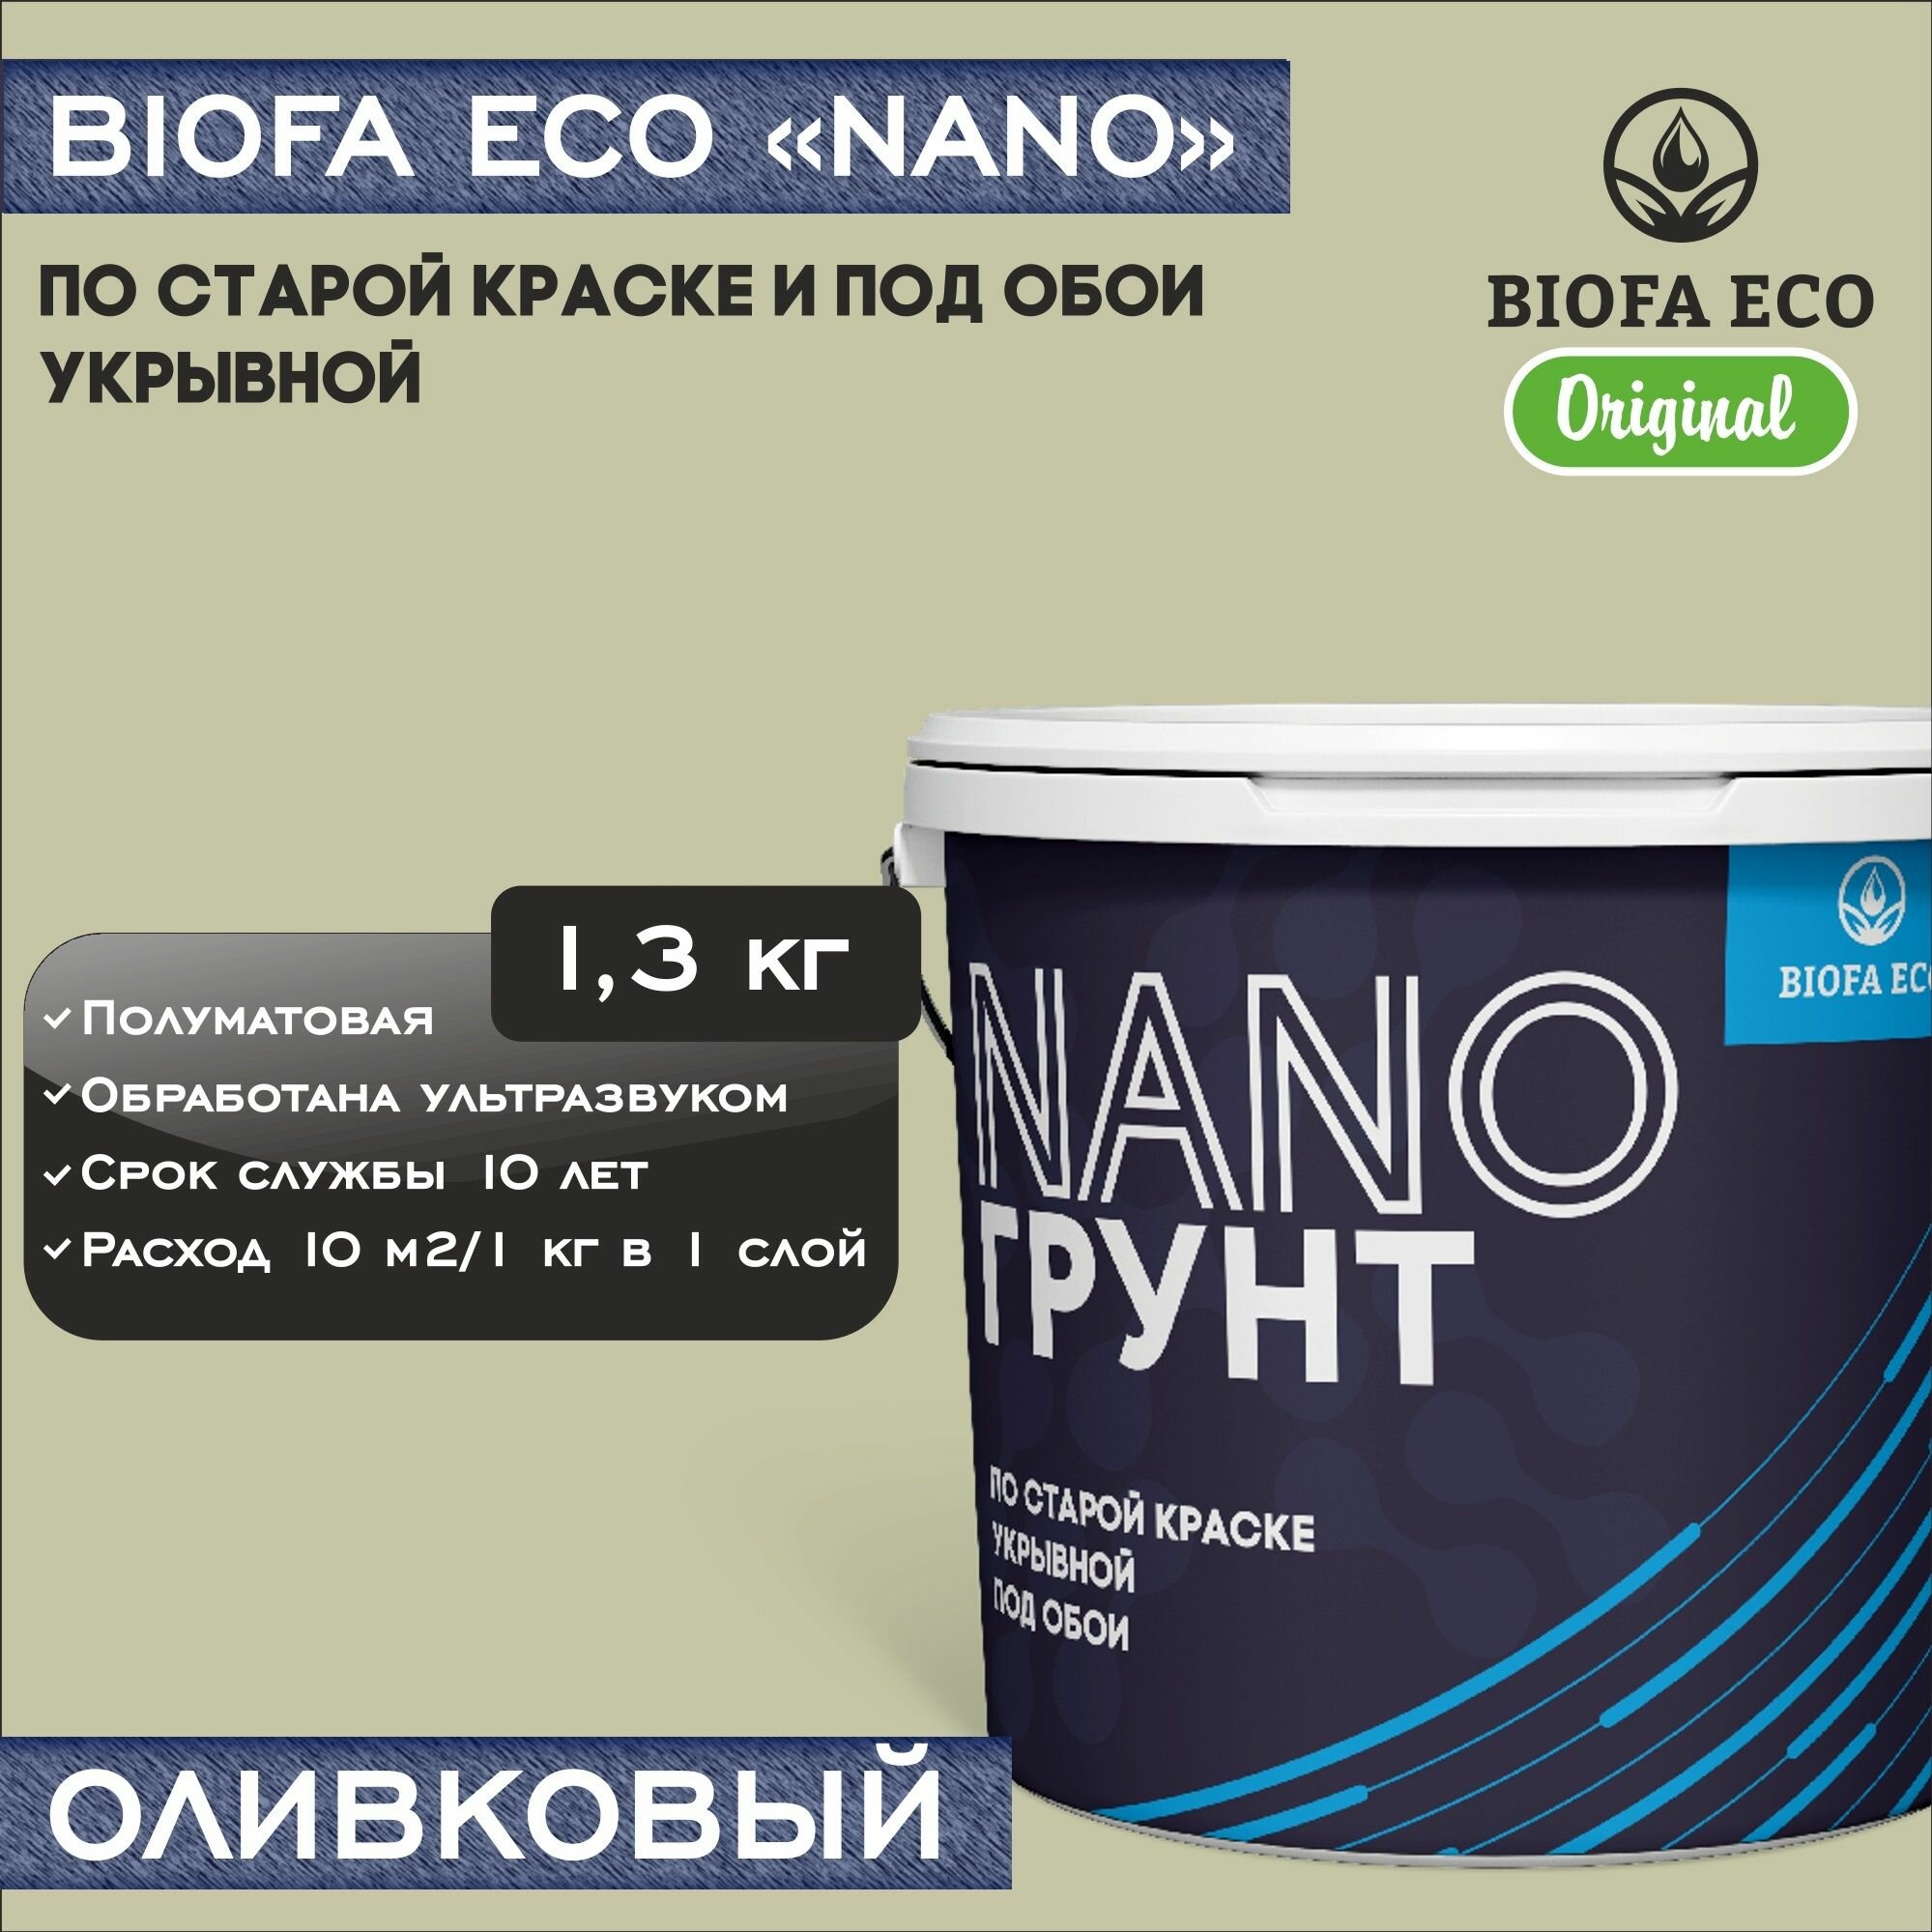 Грунт BIOFA ECO NANO укрывной под обои и по старой краске, адгезионный, цвет оливковый, 1,3 кг